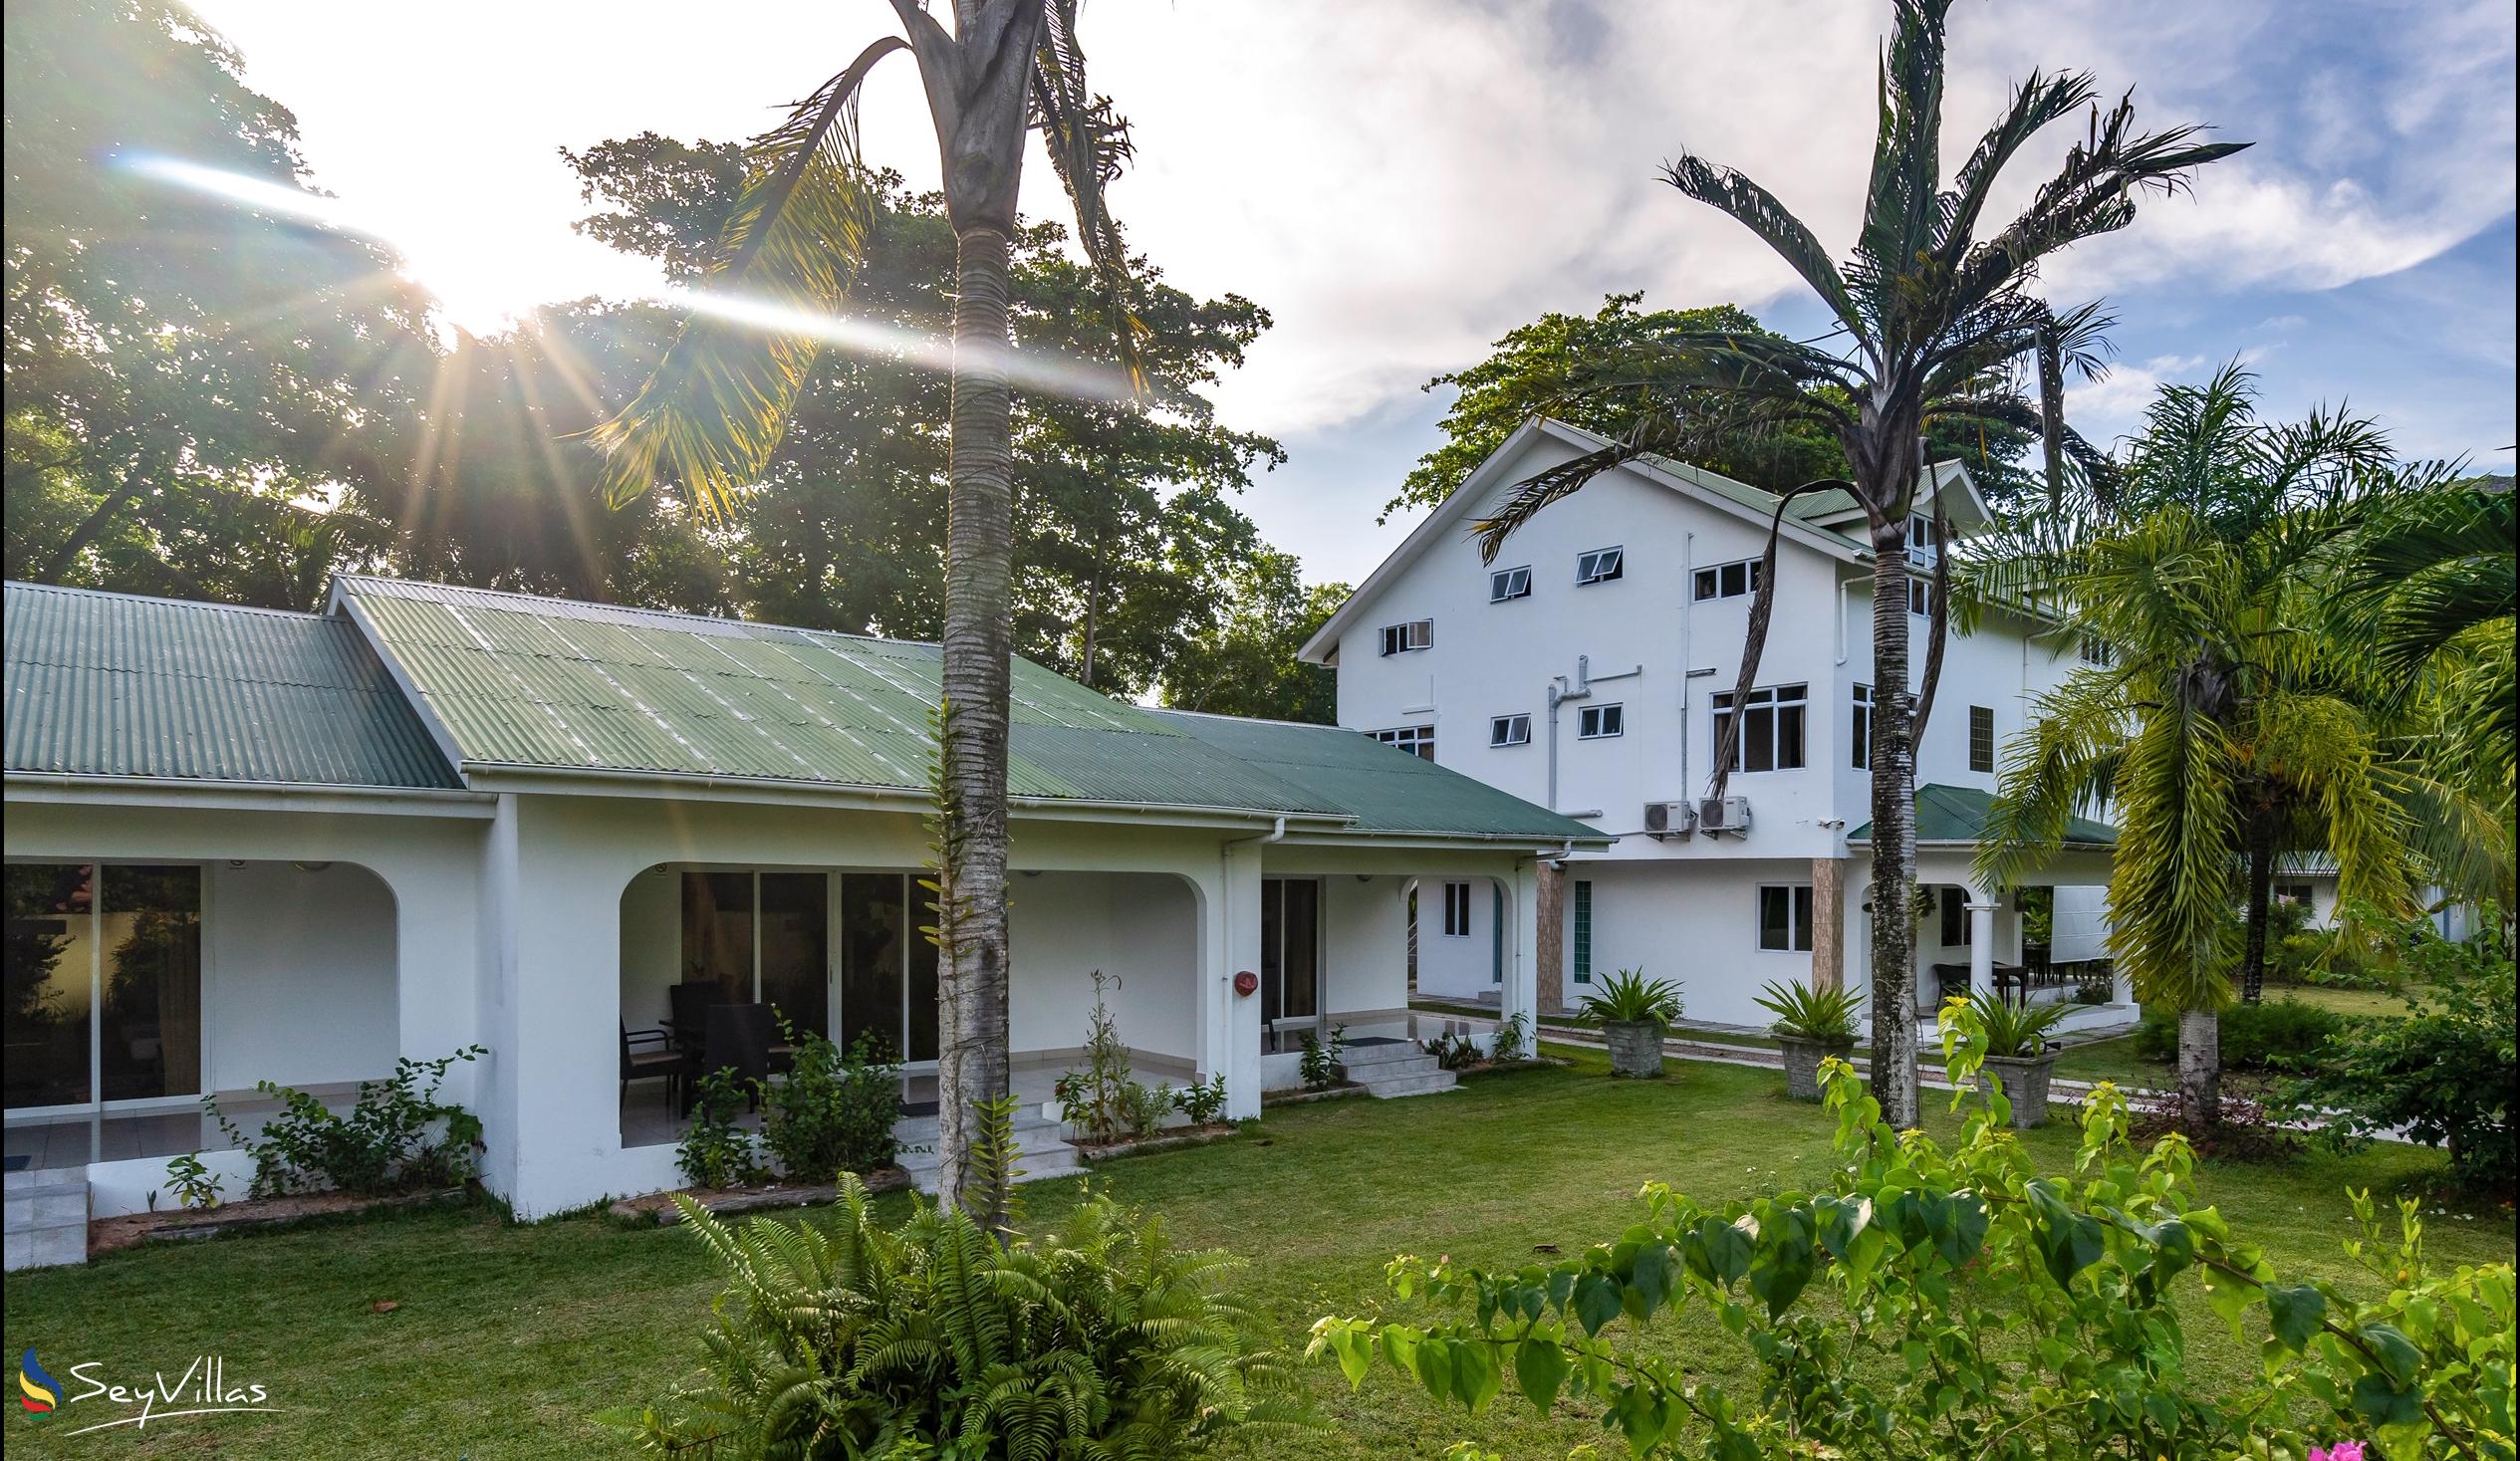 Foto 8: La Modestie Villa - Aussenbereich - Praslin (Seychellen)